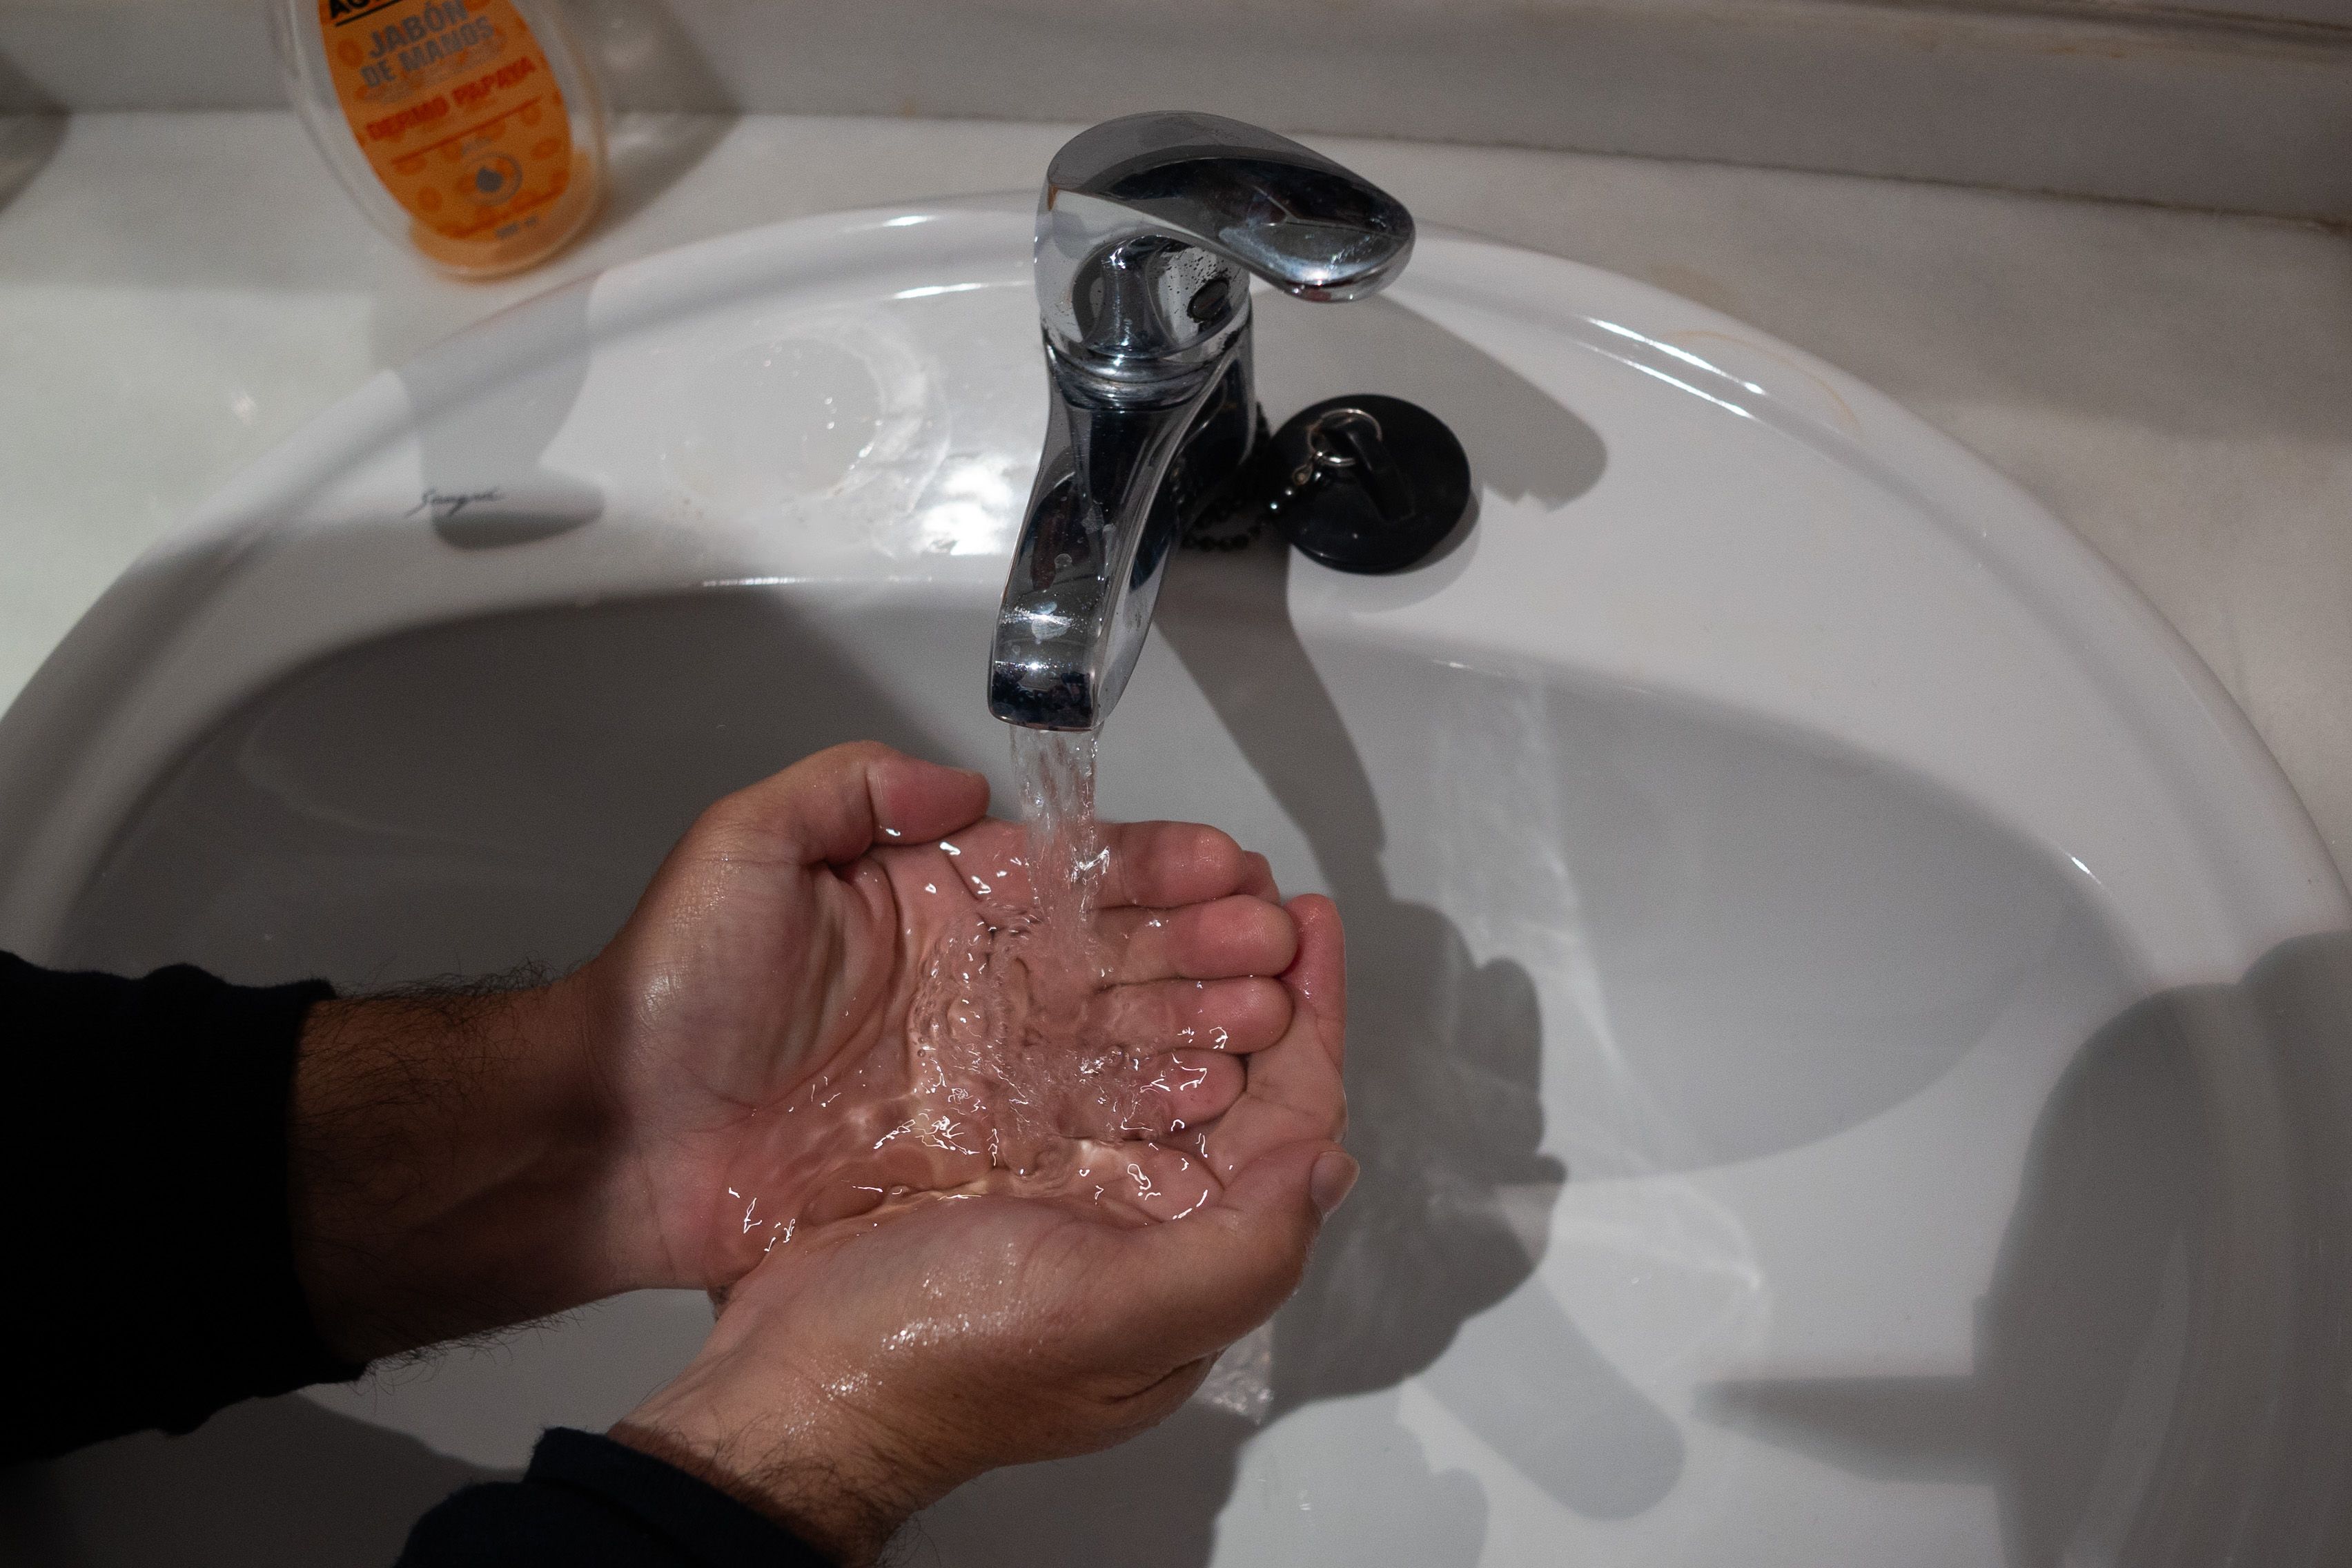 Aquajerez reclama 9 millones al Ayuntamiento de Jerez. Un grifo abierto para un lavado de manos en un aseo de Jerez, en una imagen reciente.